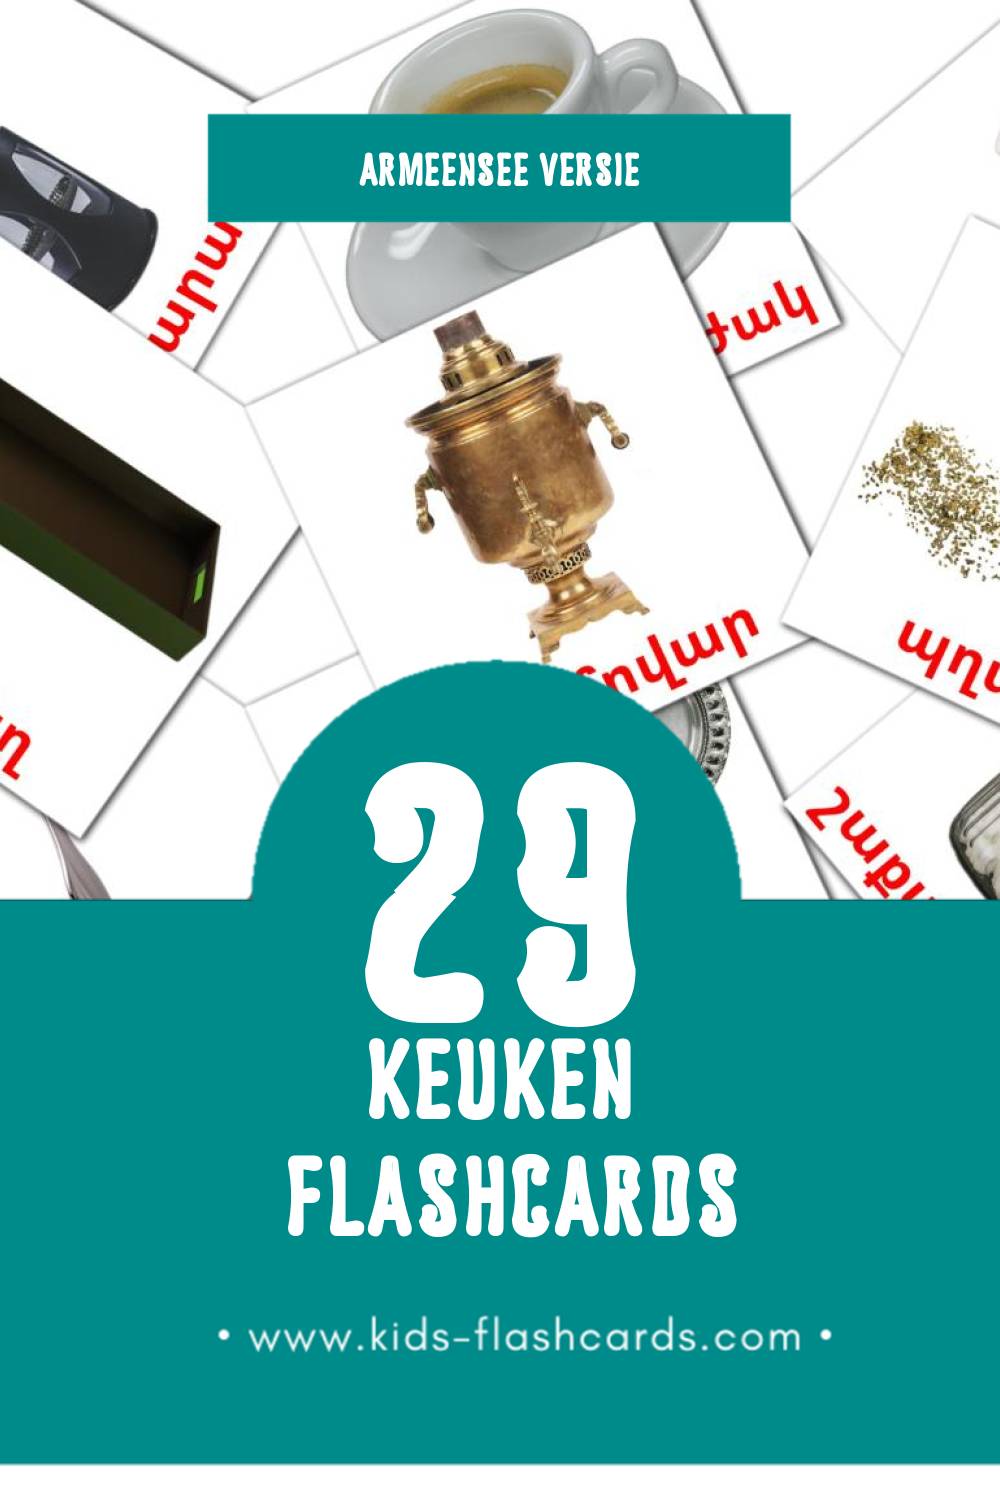 Visuele Խոհանոց Flashcards voor Kleuters (60 kaarten in het Armeense)